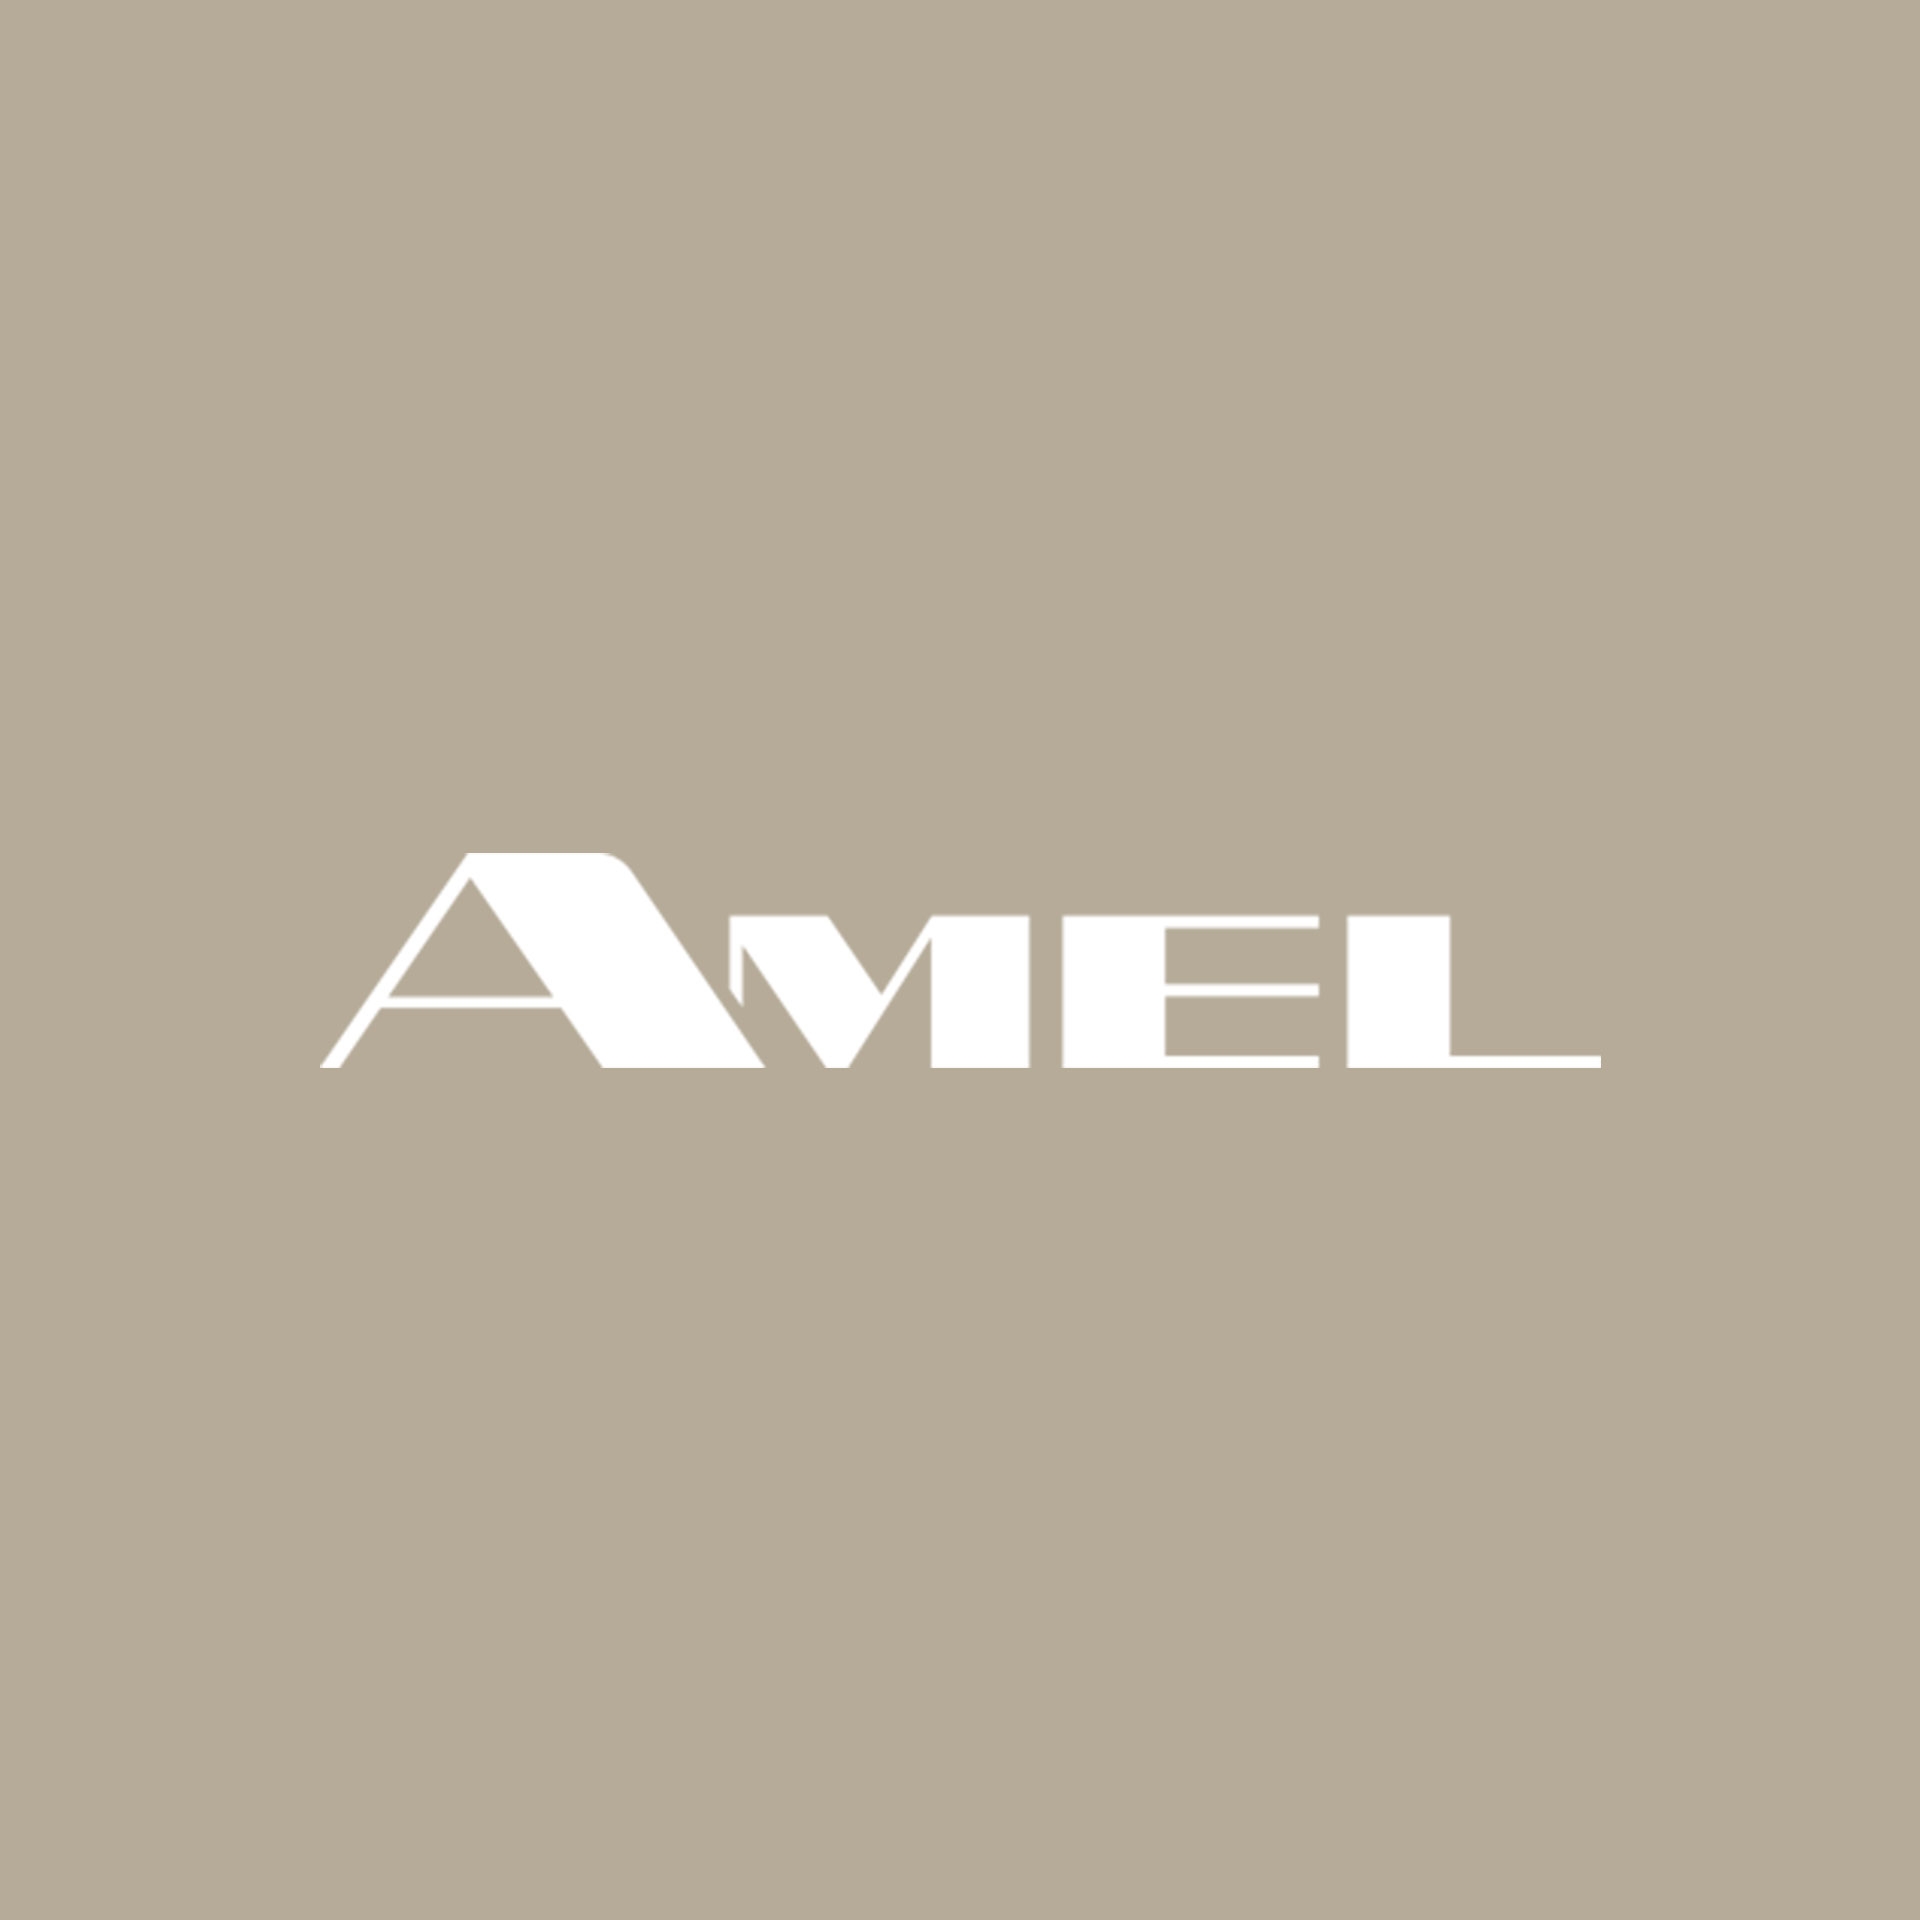 Amel logo